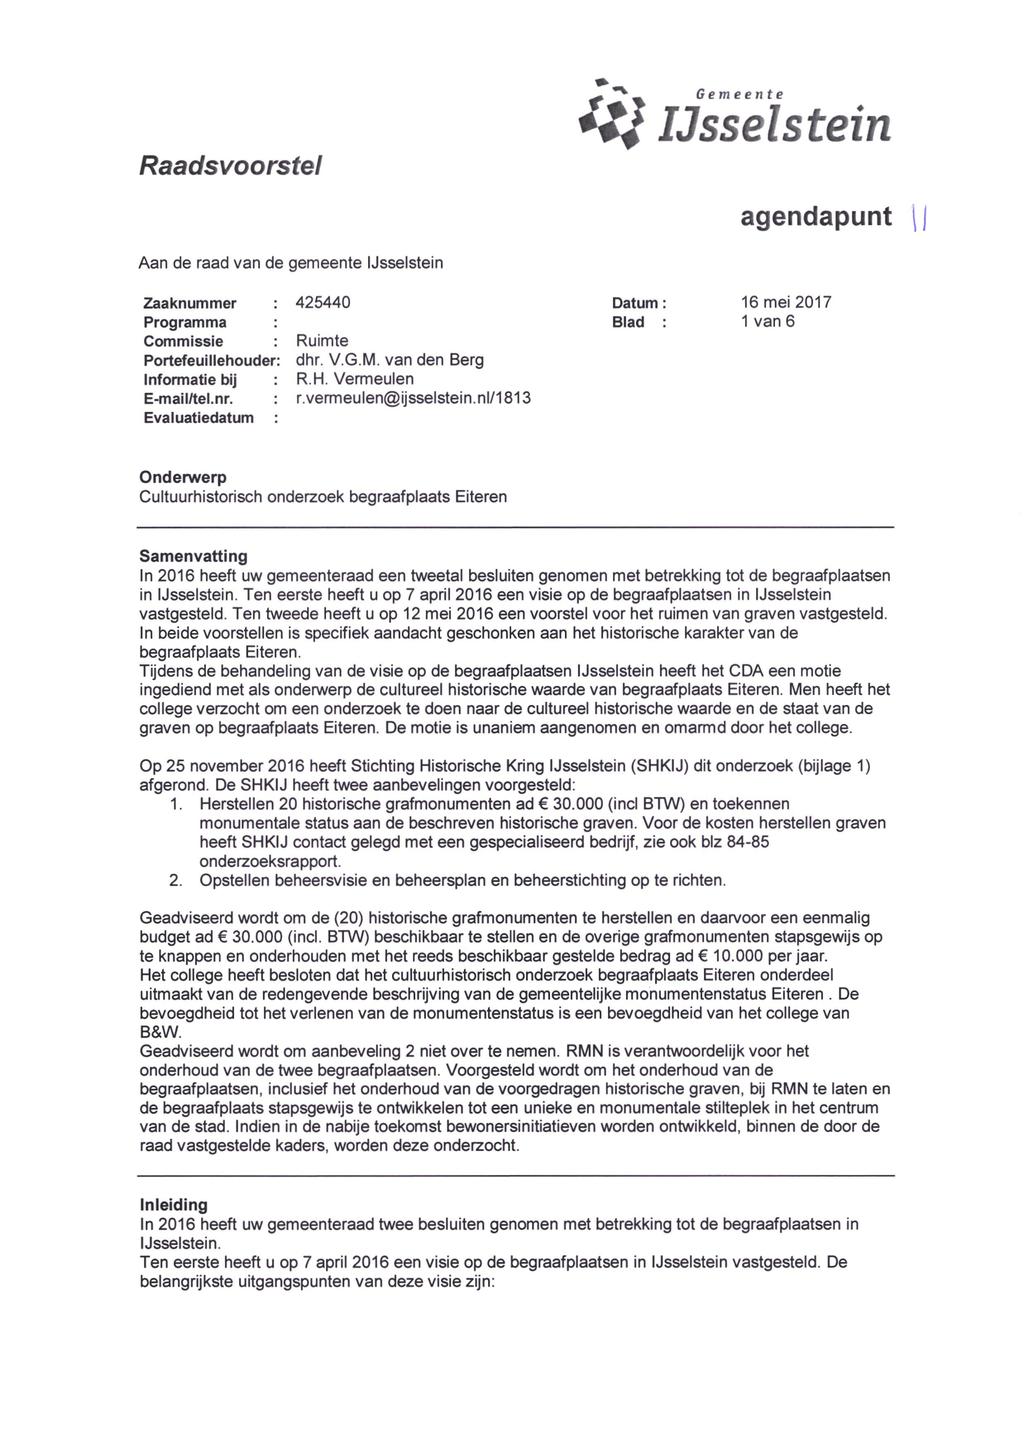 Raadsvoorstel Gemeente IJsselstein agendapunt Aan de raad van de gemeente IJsselstein Zaaknummer : 425440 Programma : Commissie : Ruimte Portefeuillehouder: dhr. V.G.M.